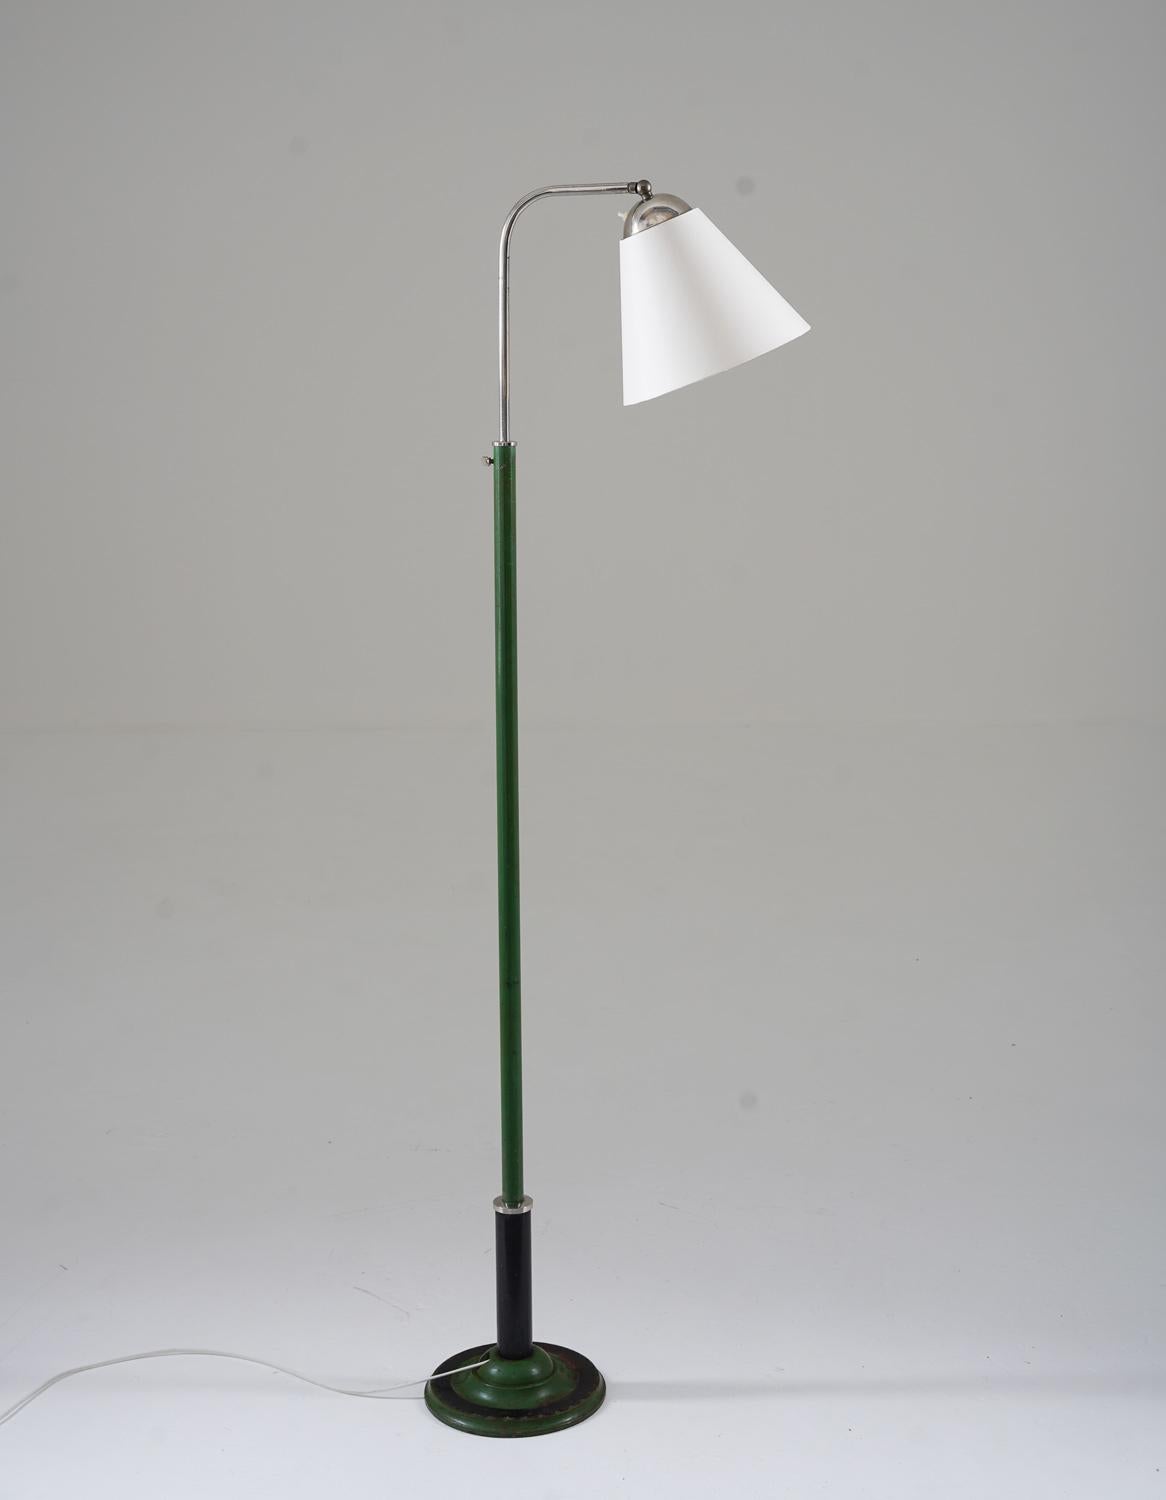 132-180
Joli lampadaire fonctionnaliste fabriqué en Suède dans les années 1930. 
La lampe se compose d'une base en fer vert et noir, supportant un bras pivotant chromé qui maintient l'abat-jour. 
La hauteur est réglable entre 132-180cm